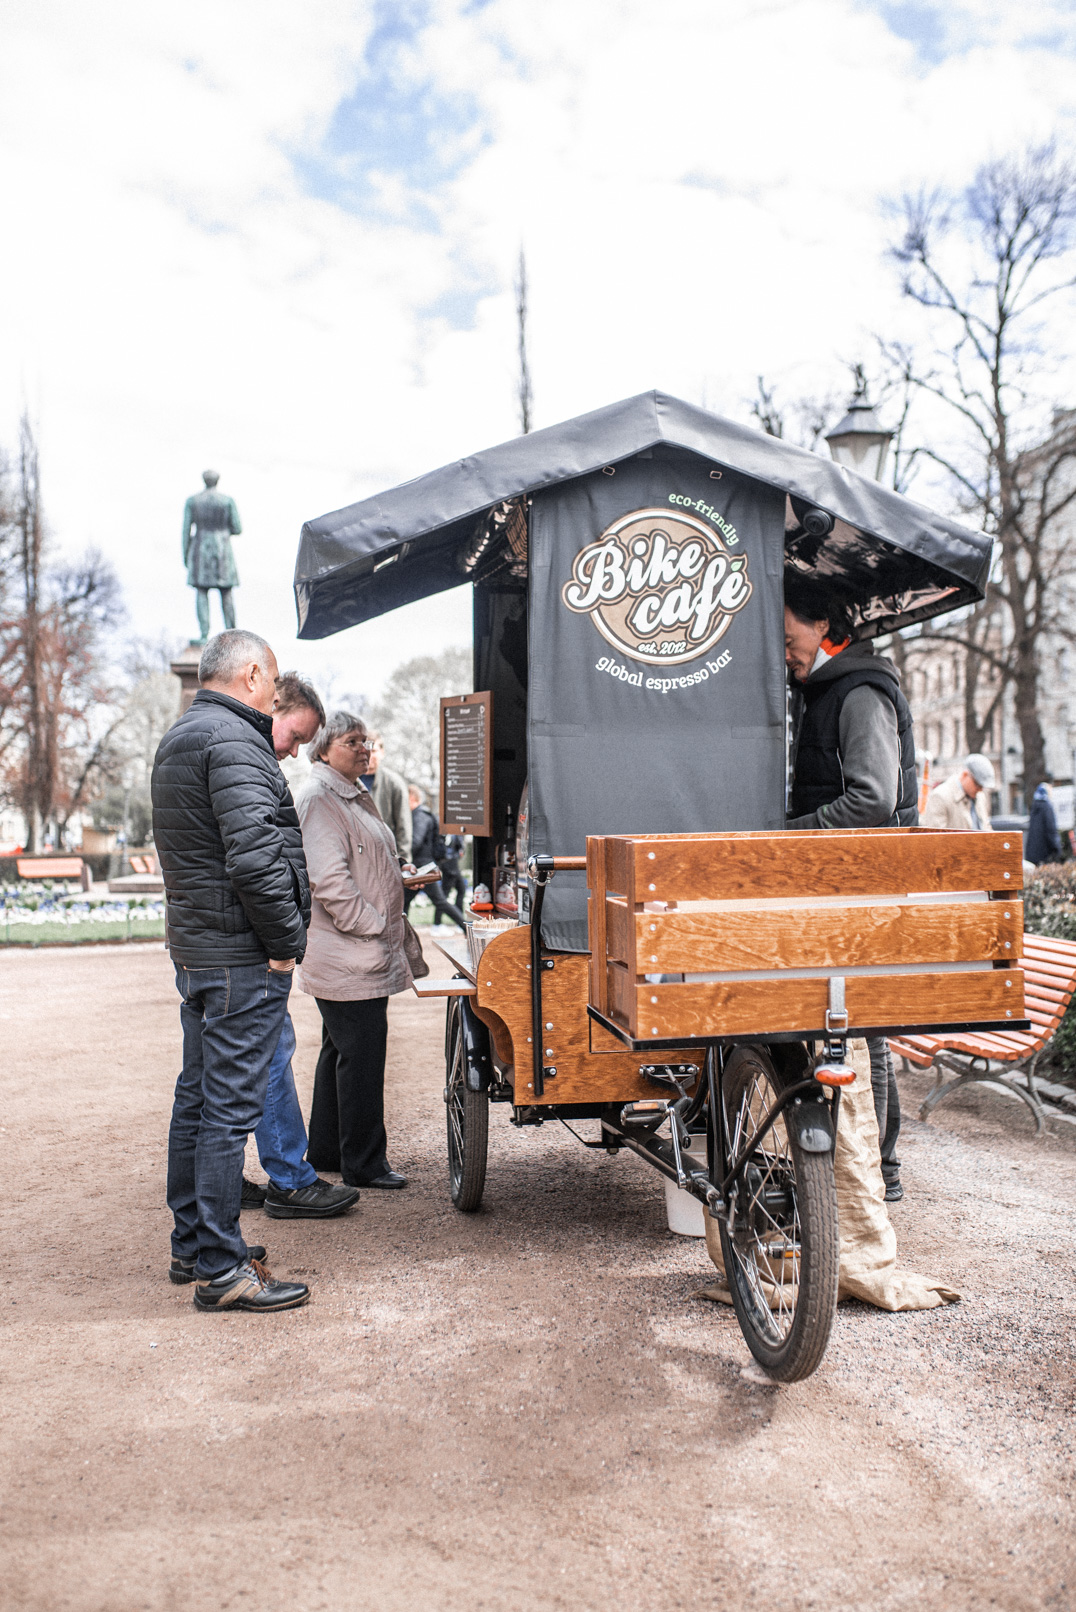 One day in Helsinki - Bike Coffee Shop